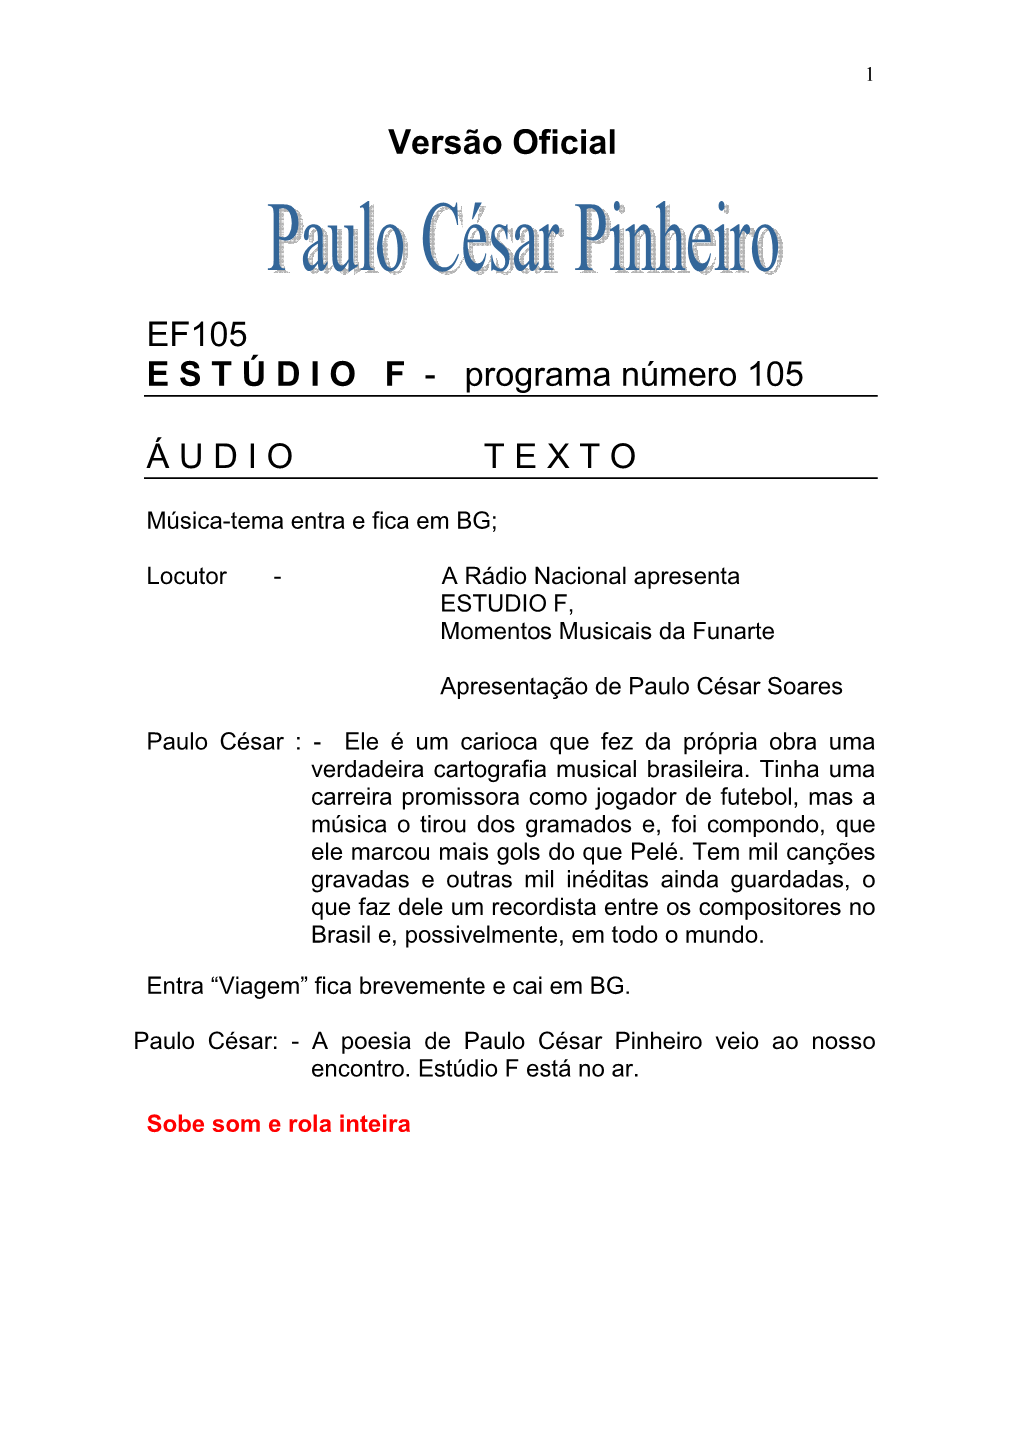 EF.105.Paulo Cesar Pinheiro